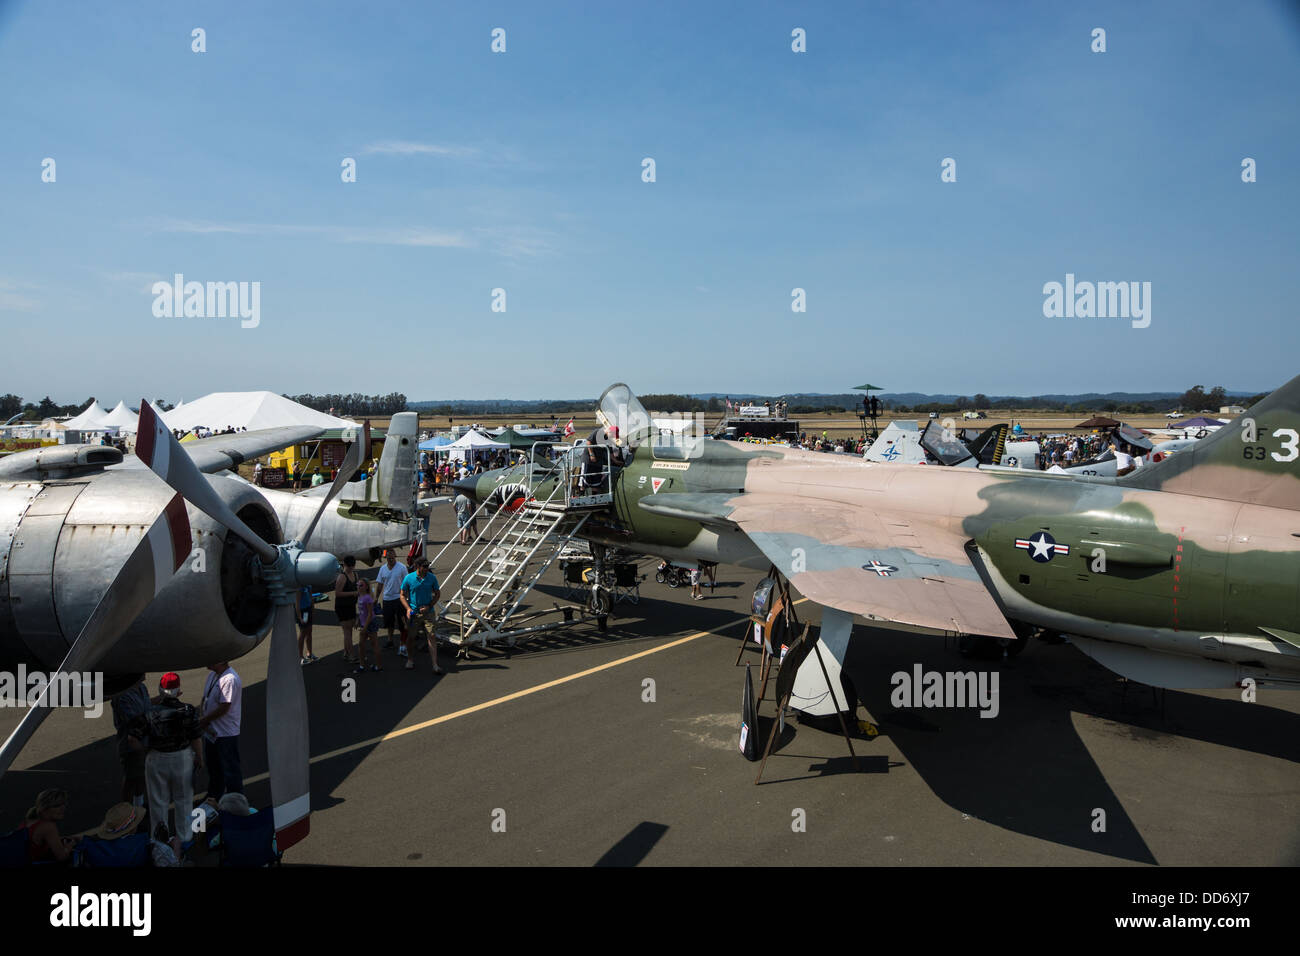 8/18/2013, Santa Rosa, California. Visitors view vintage aircraft at the Pacific Coast Air Museum airshow. Stock Photo